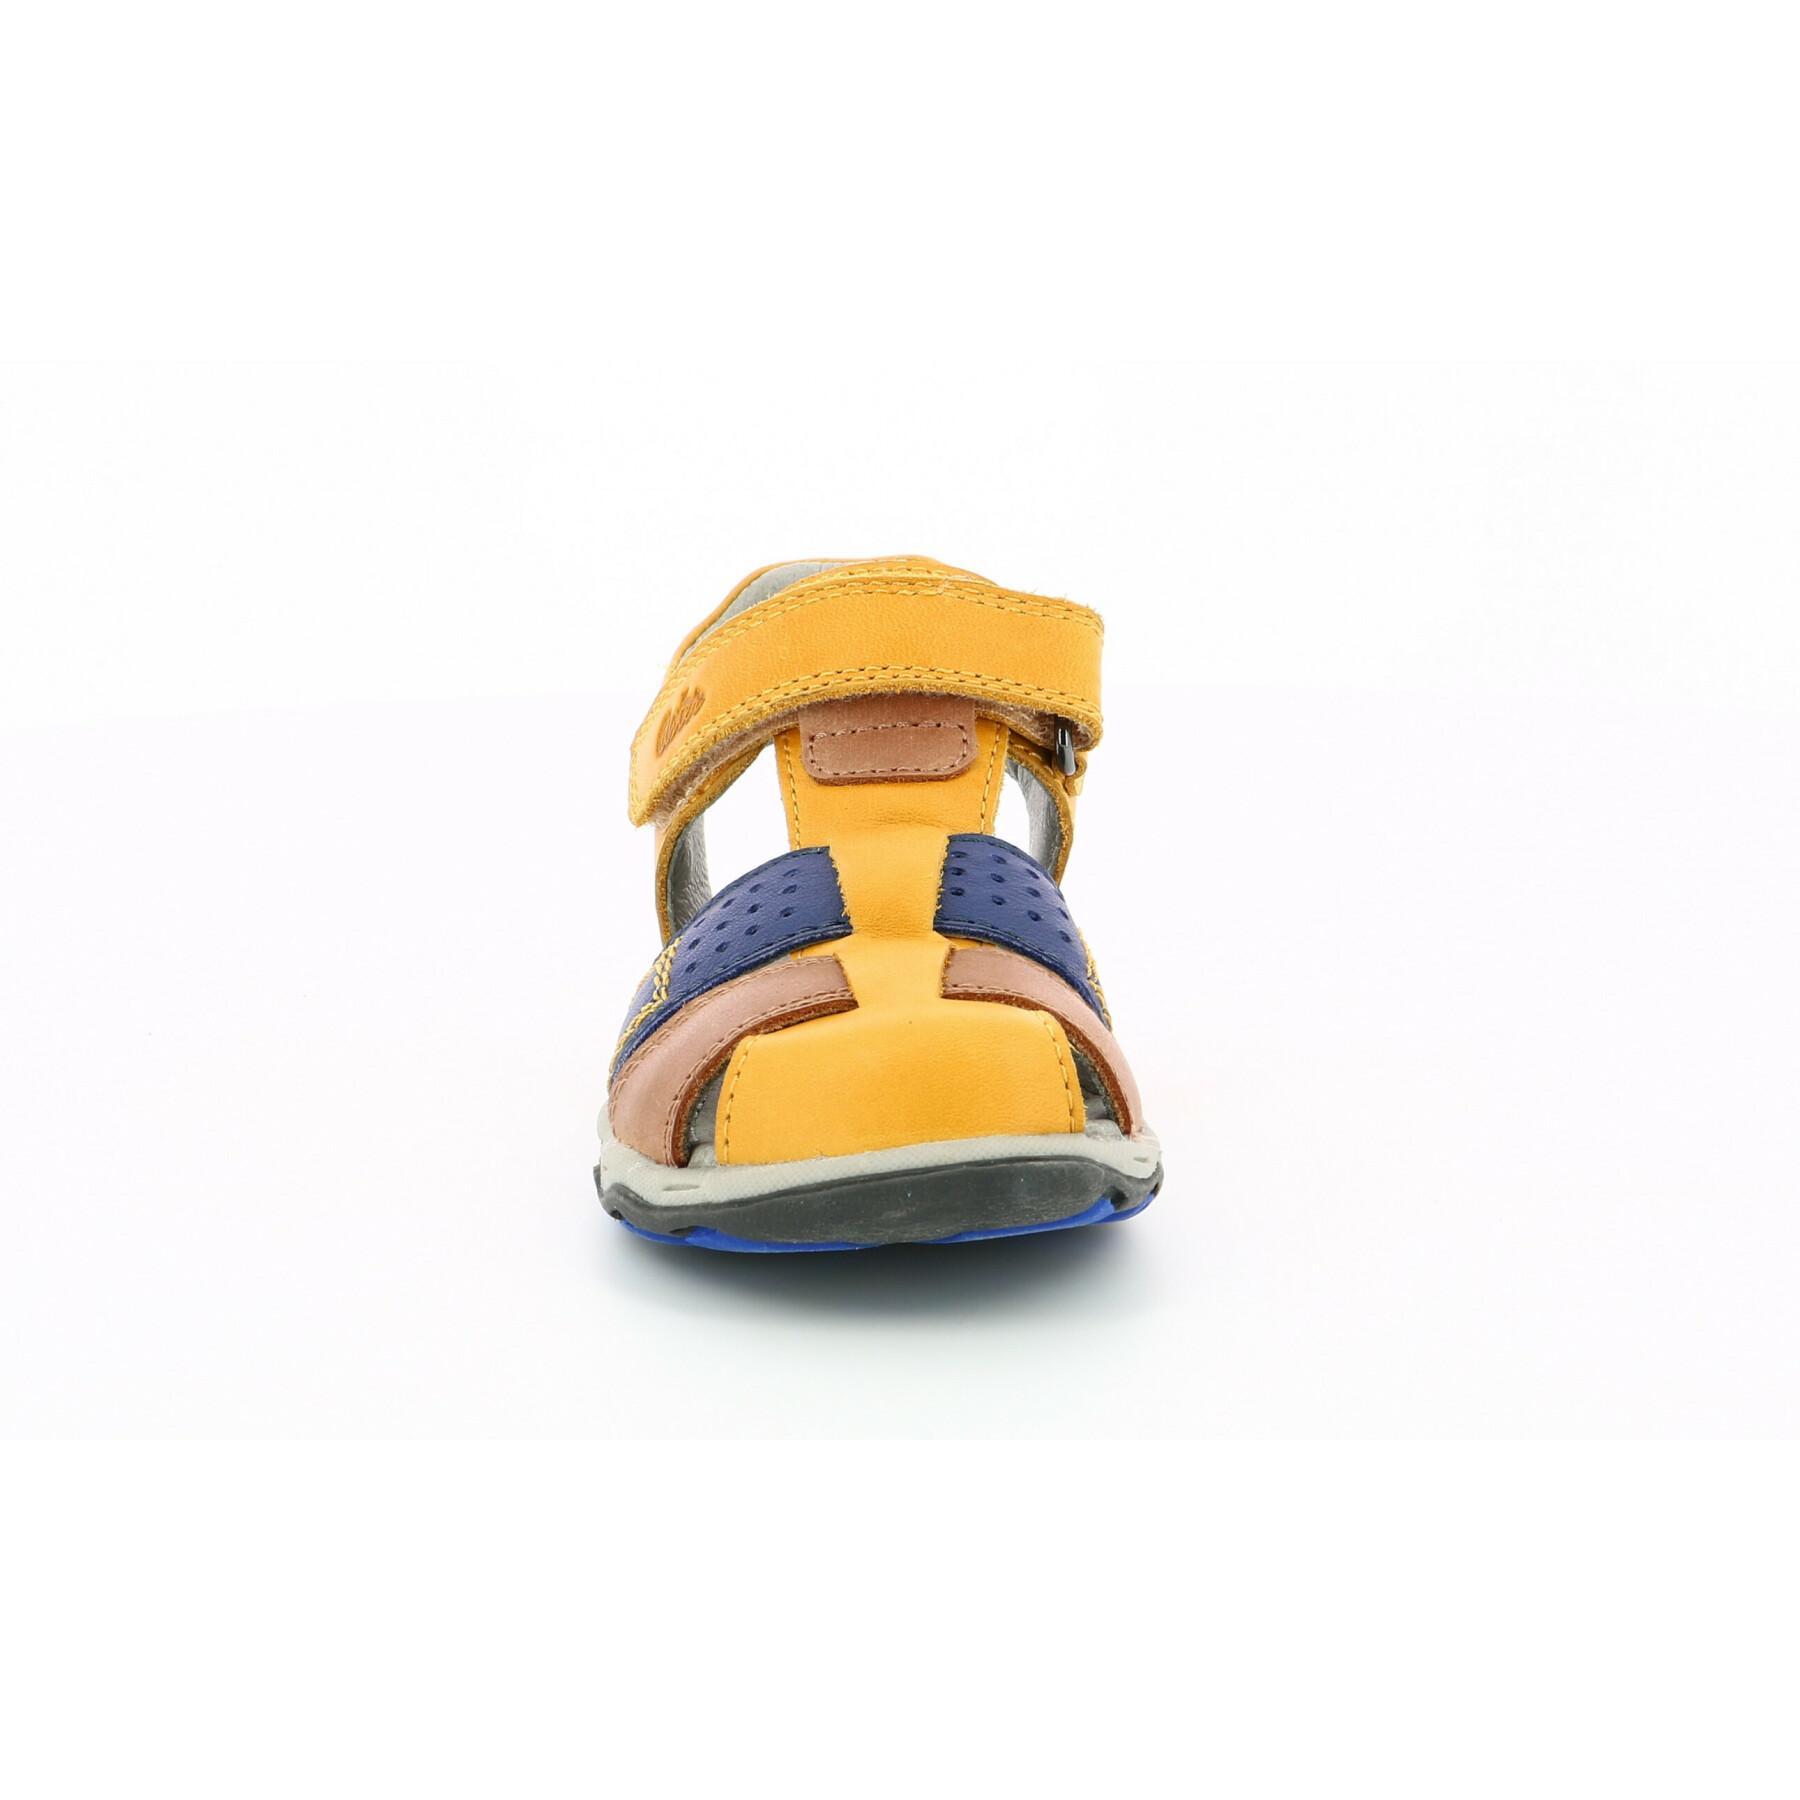 Children's sandals Aster Bonite